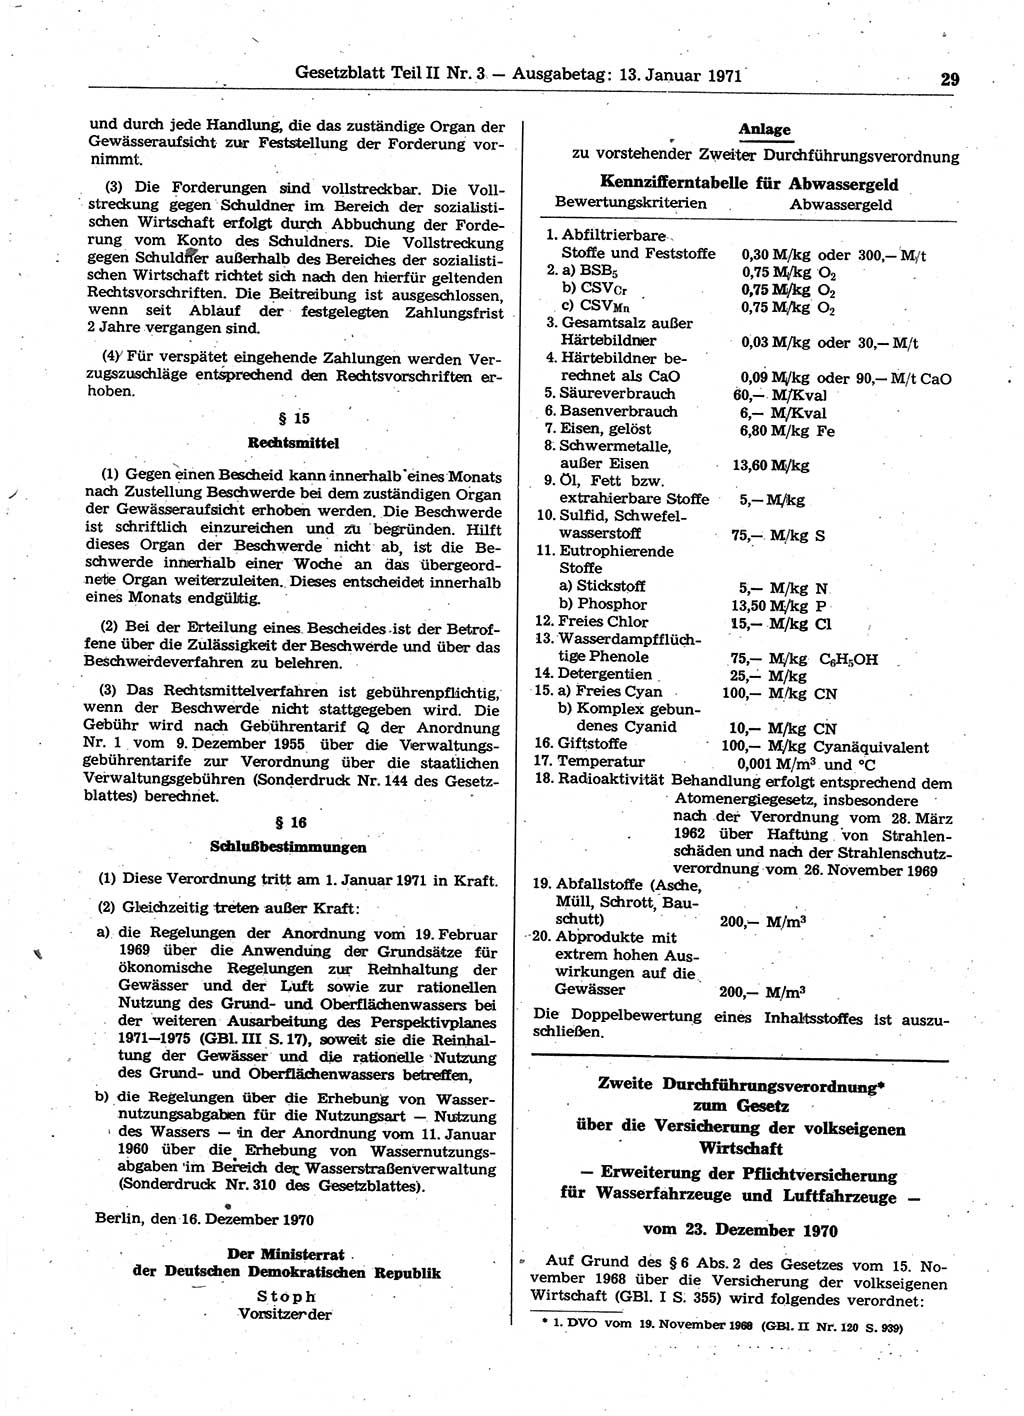 Gesetzblatt (GBl.) der Deutschen Demokratischen Republik (DDR) Teil ⅠⅠ 1971, Seite 29 (GBl. DDR ⅠⅠ 1971, S. 29)